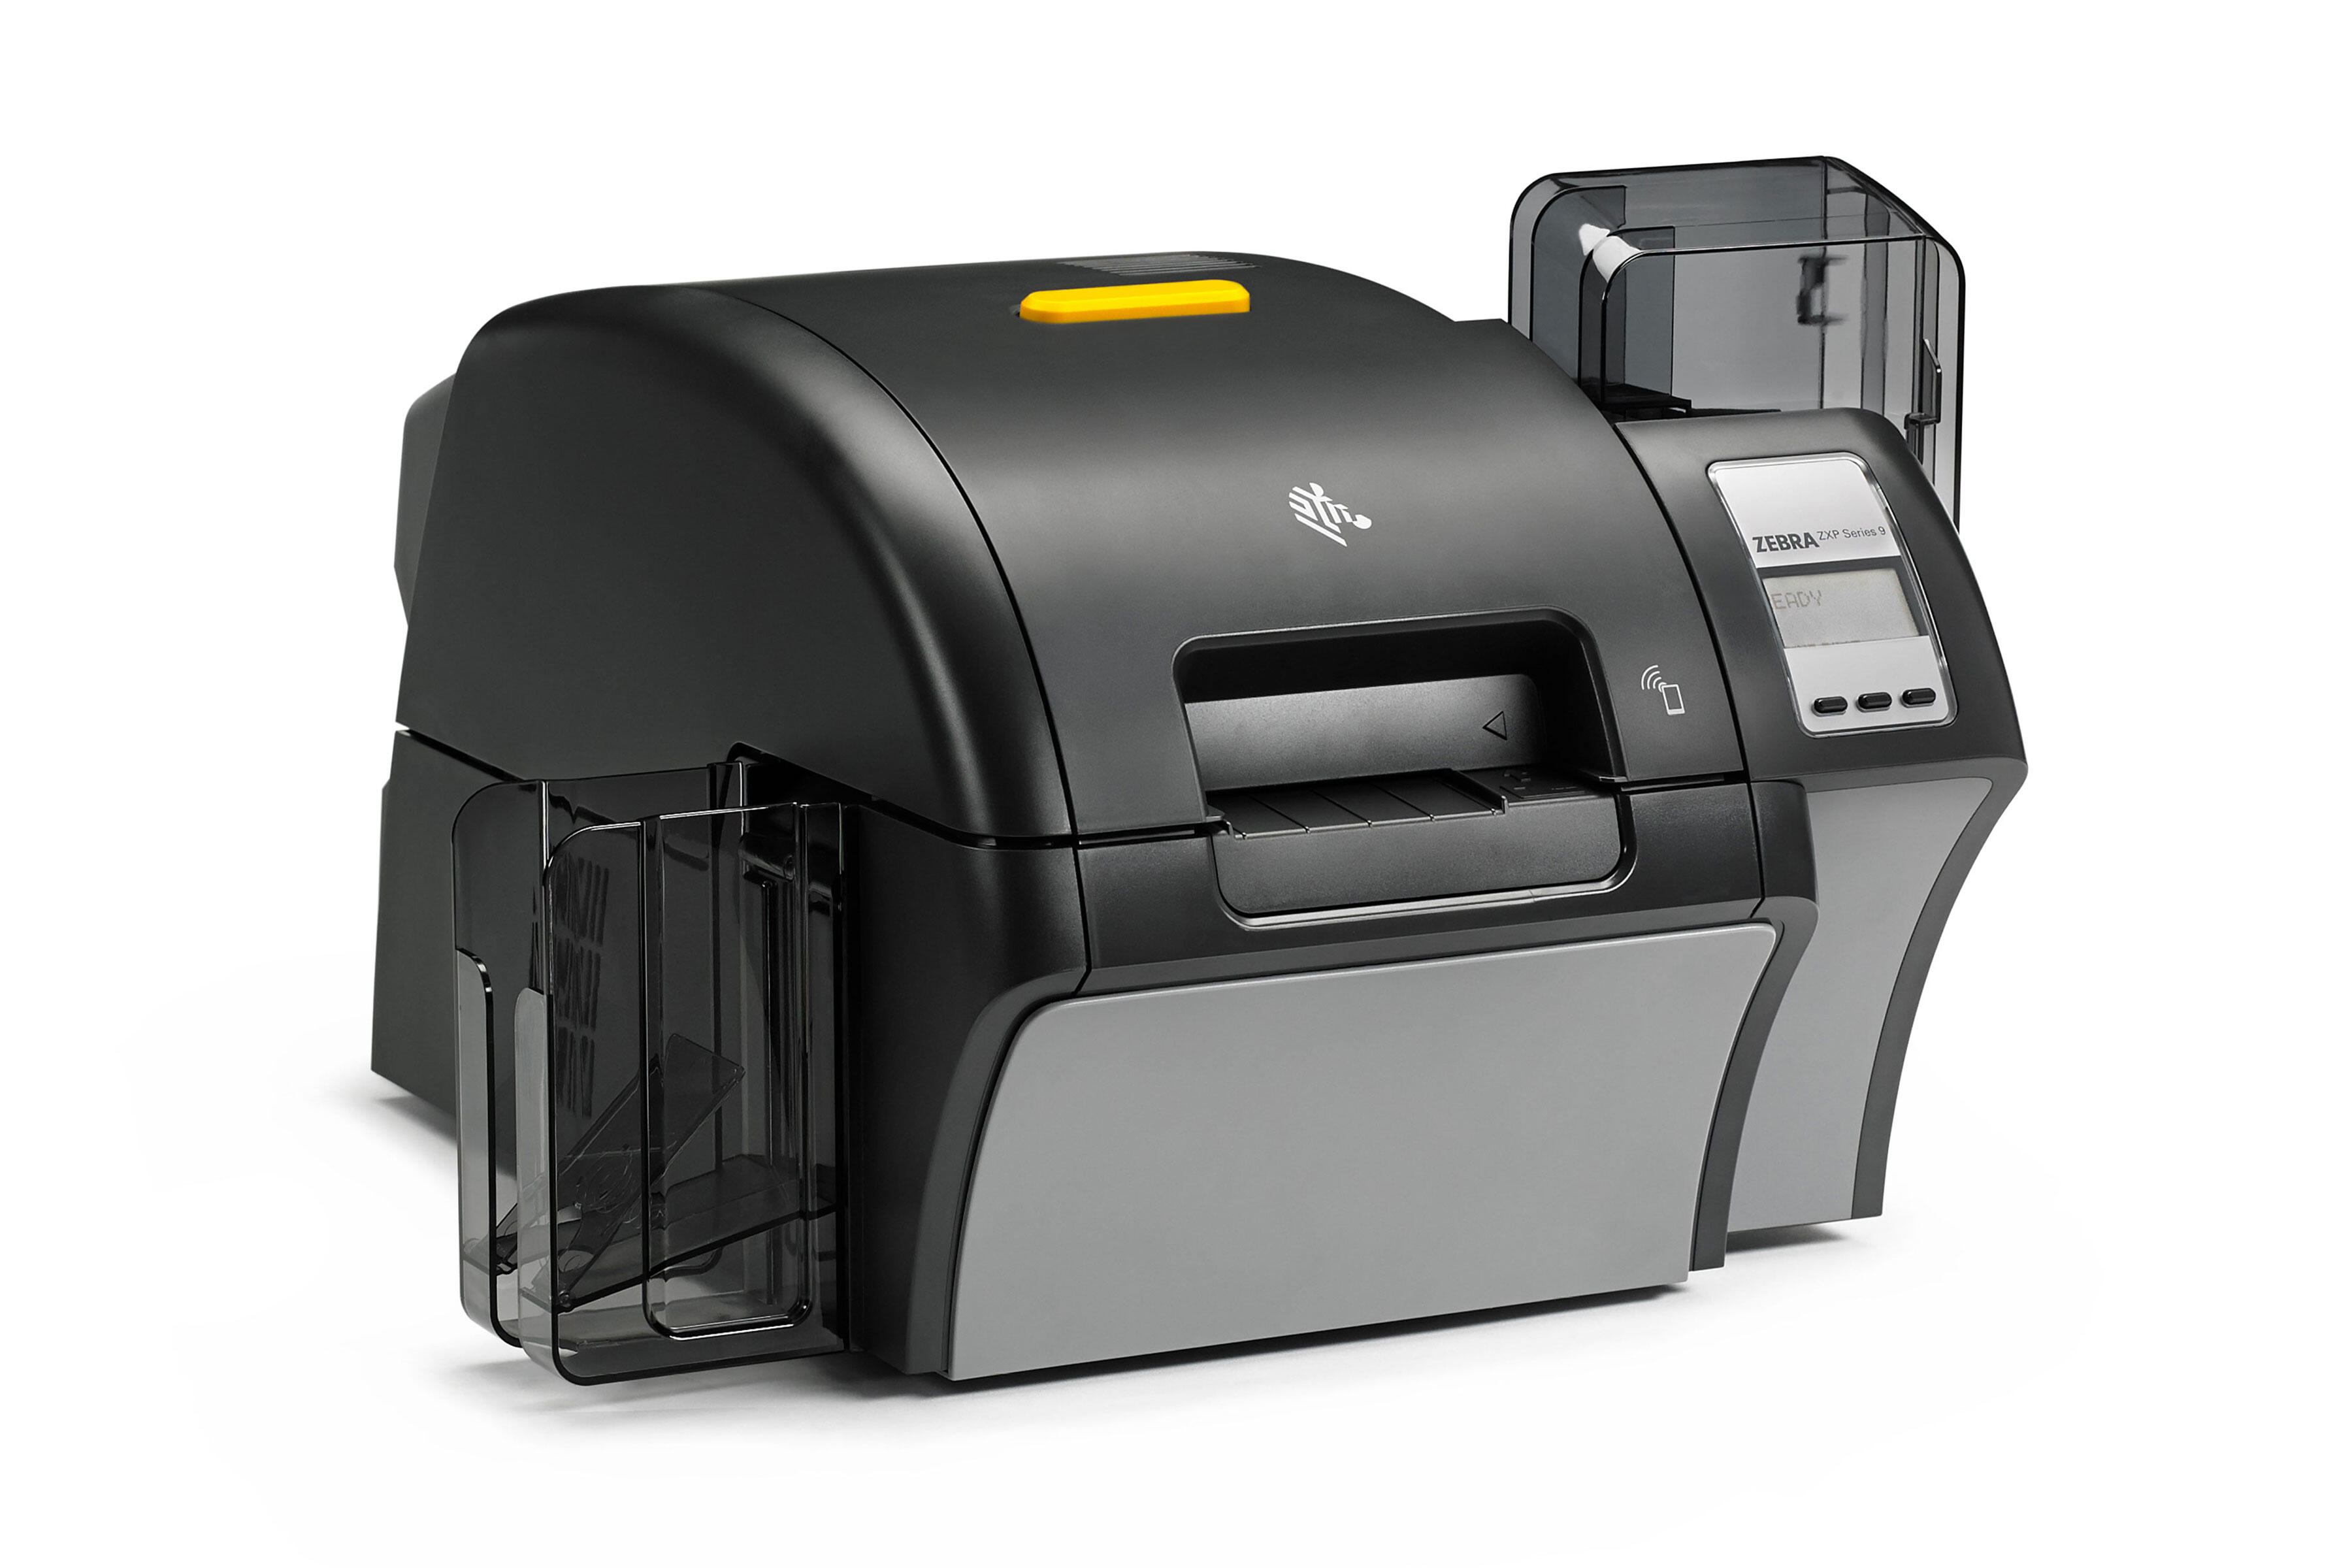 Zebra id card printers qatar